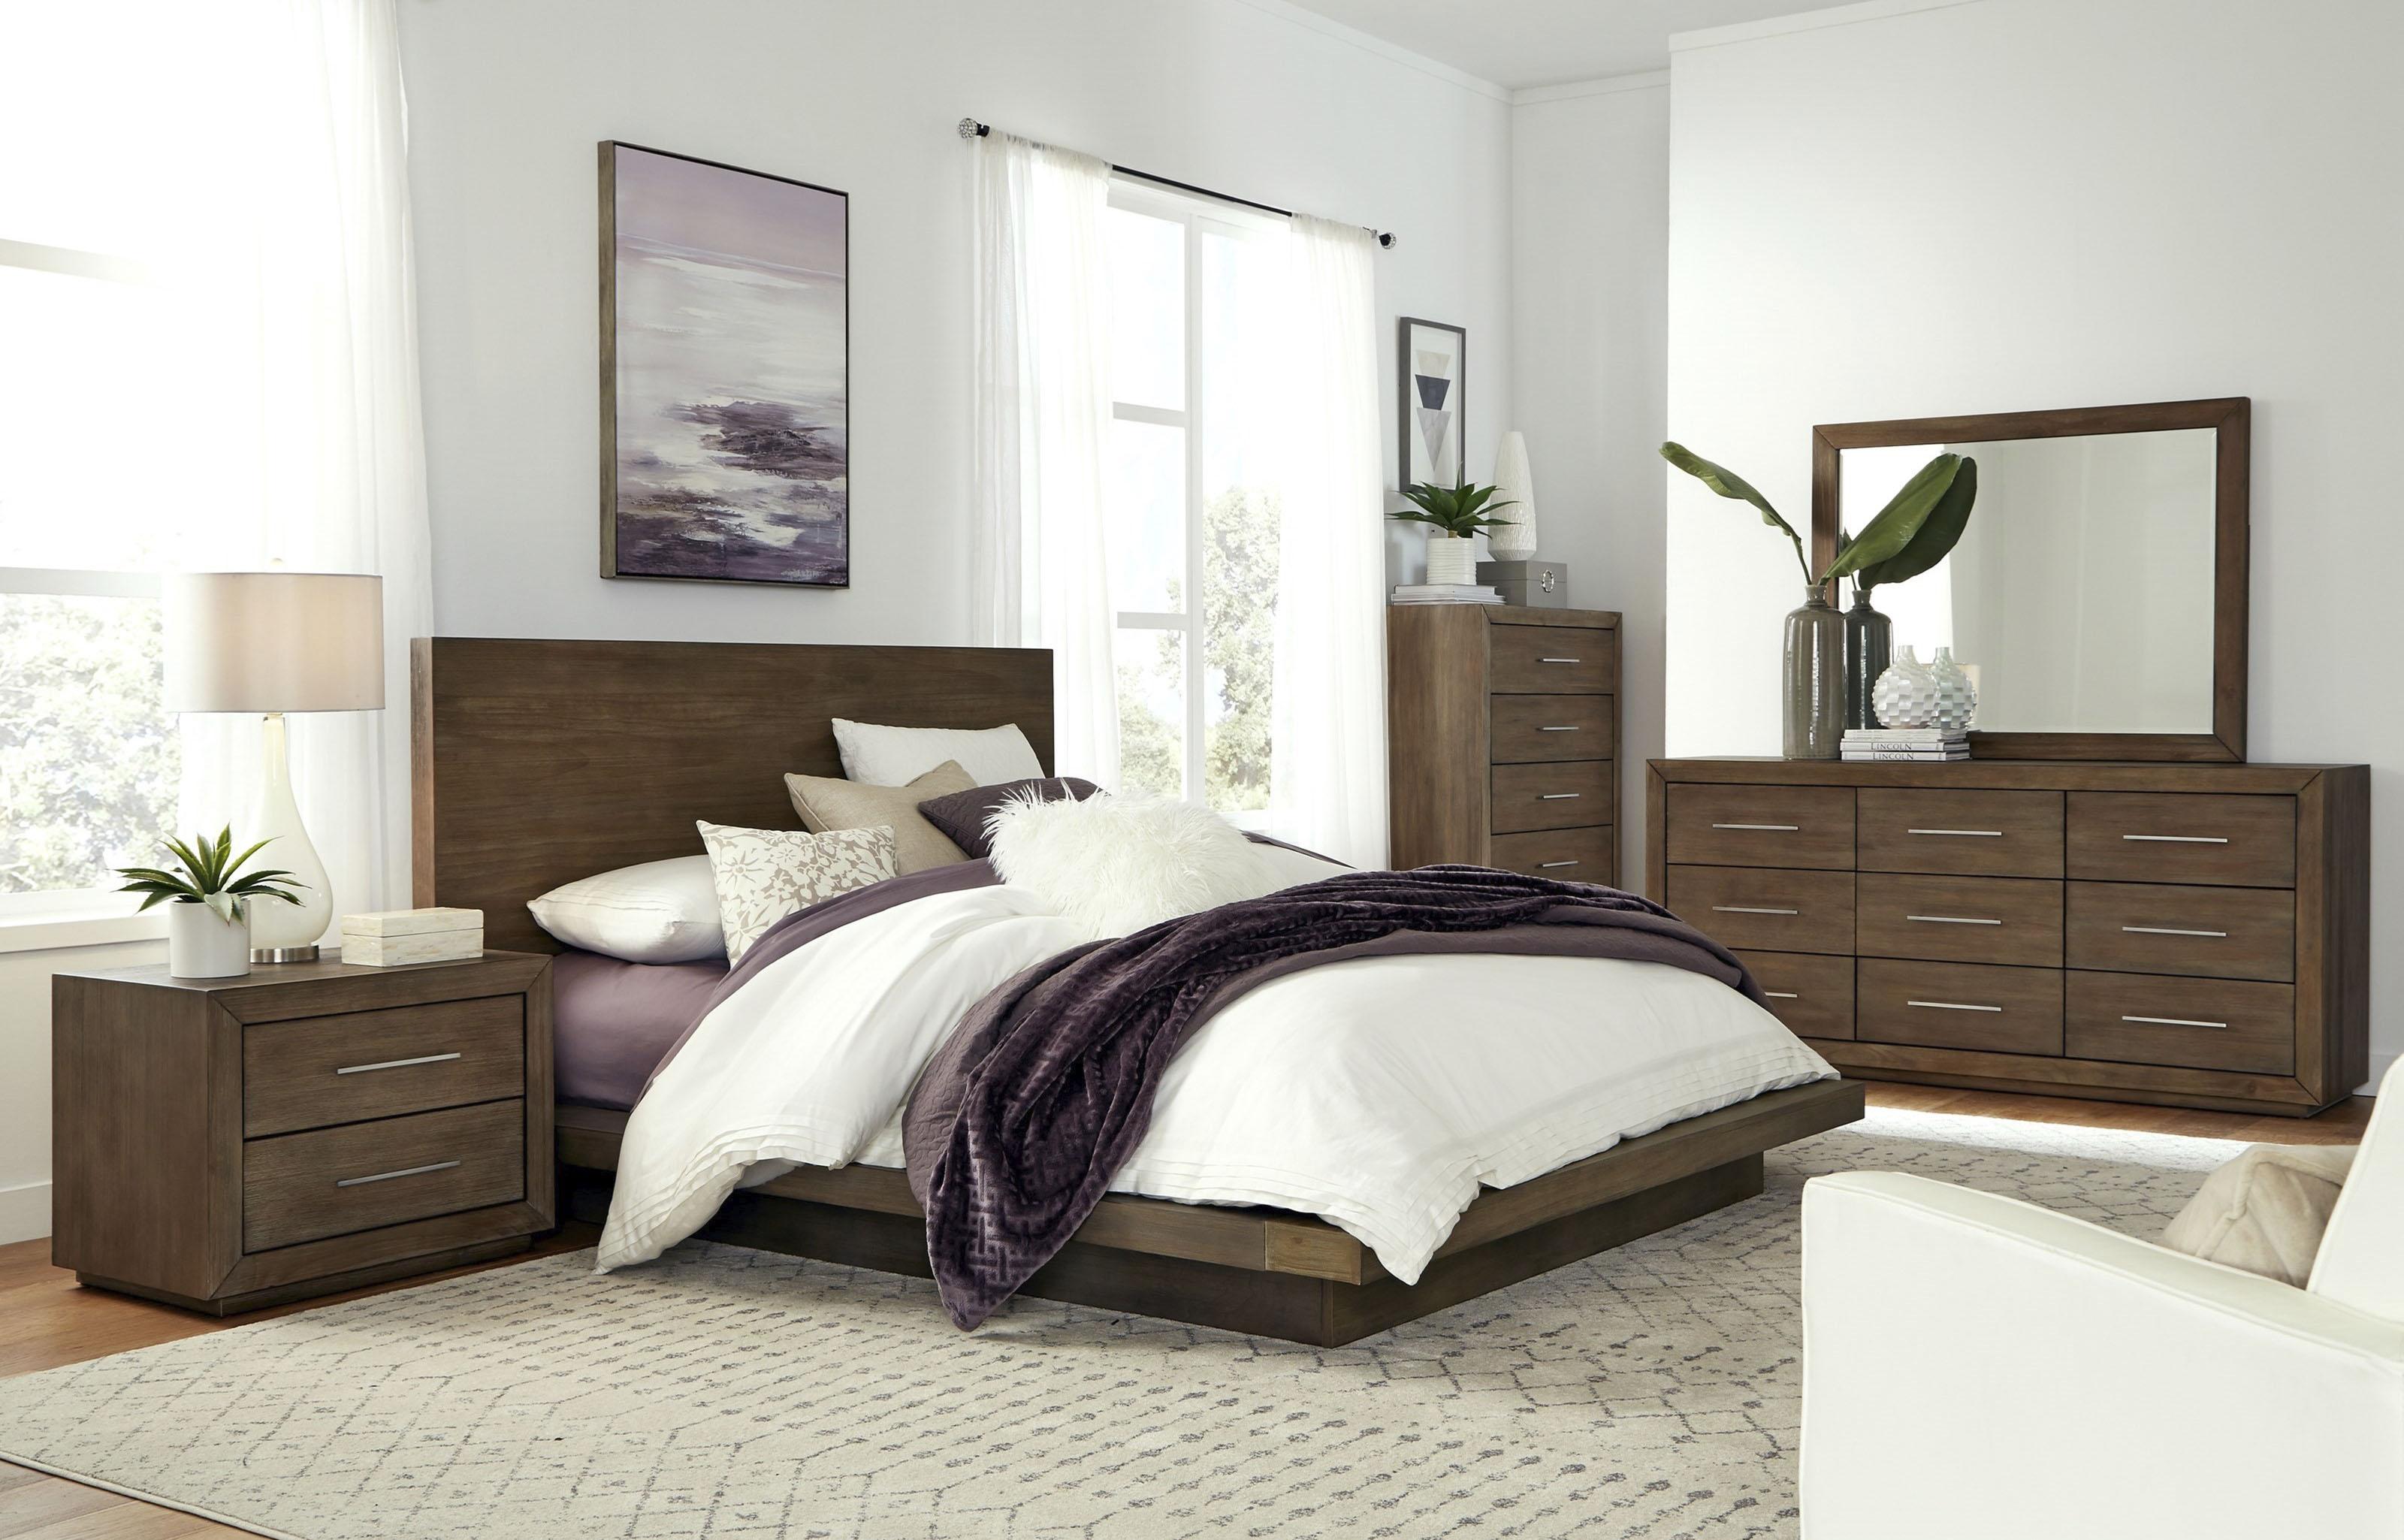 

    
Rustic Dark Pine King Platform Bedroom Set 4Pcs MELBOURNE by Modus Furniture
